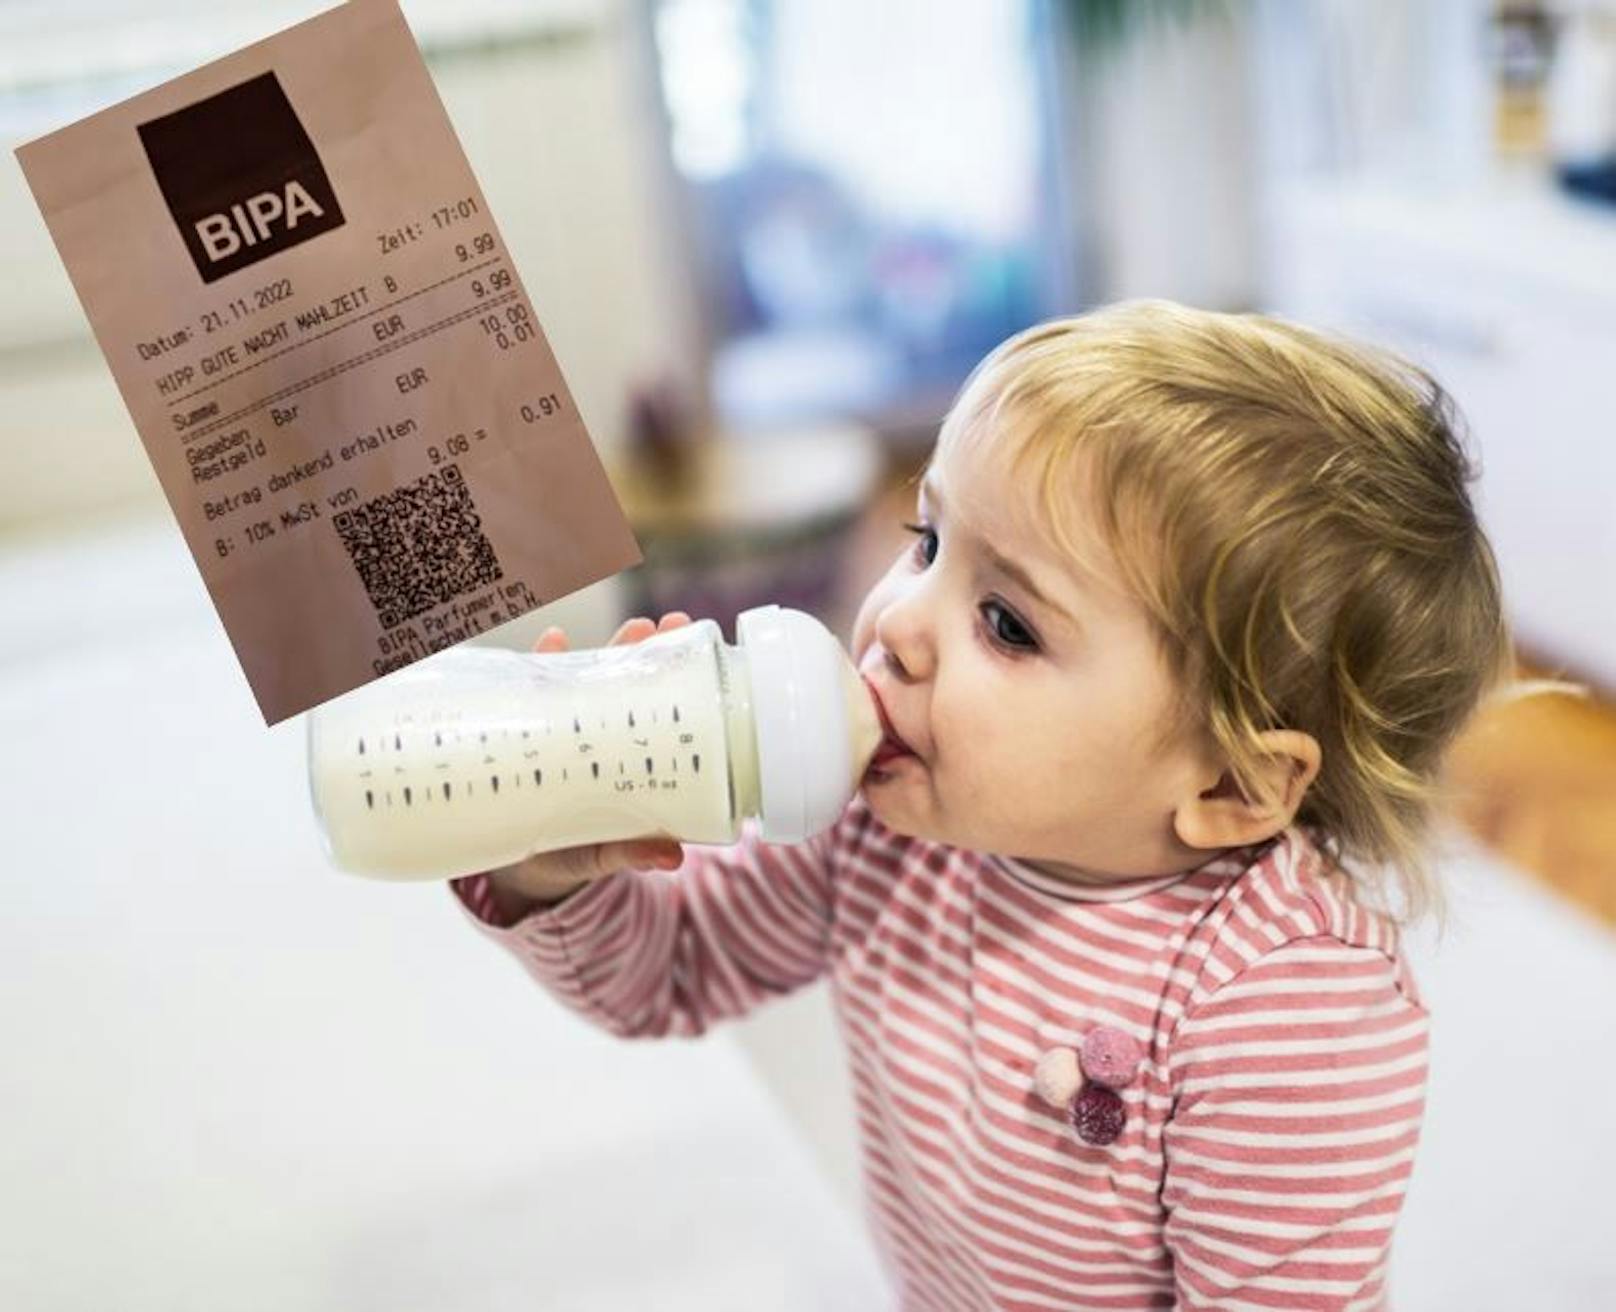 Milchnahrung für Babys und Kleinkinder ist um 2 Euro teurer geworden.